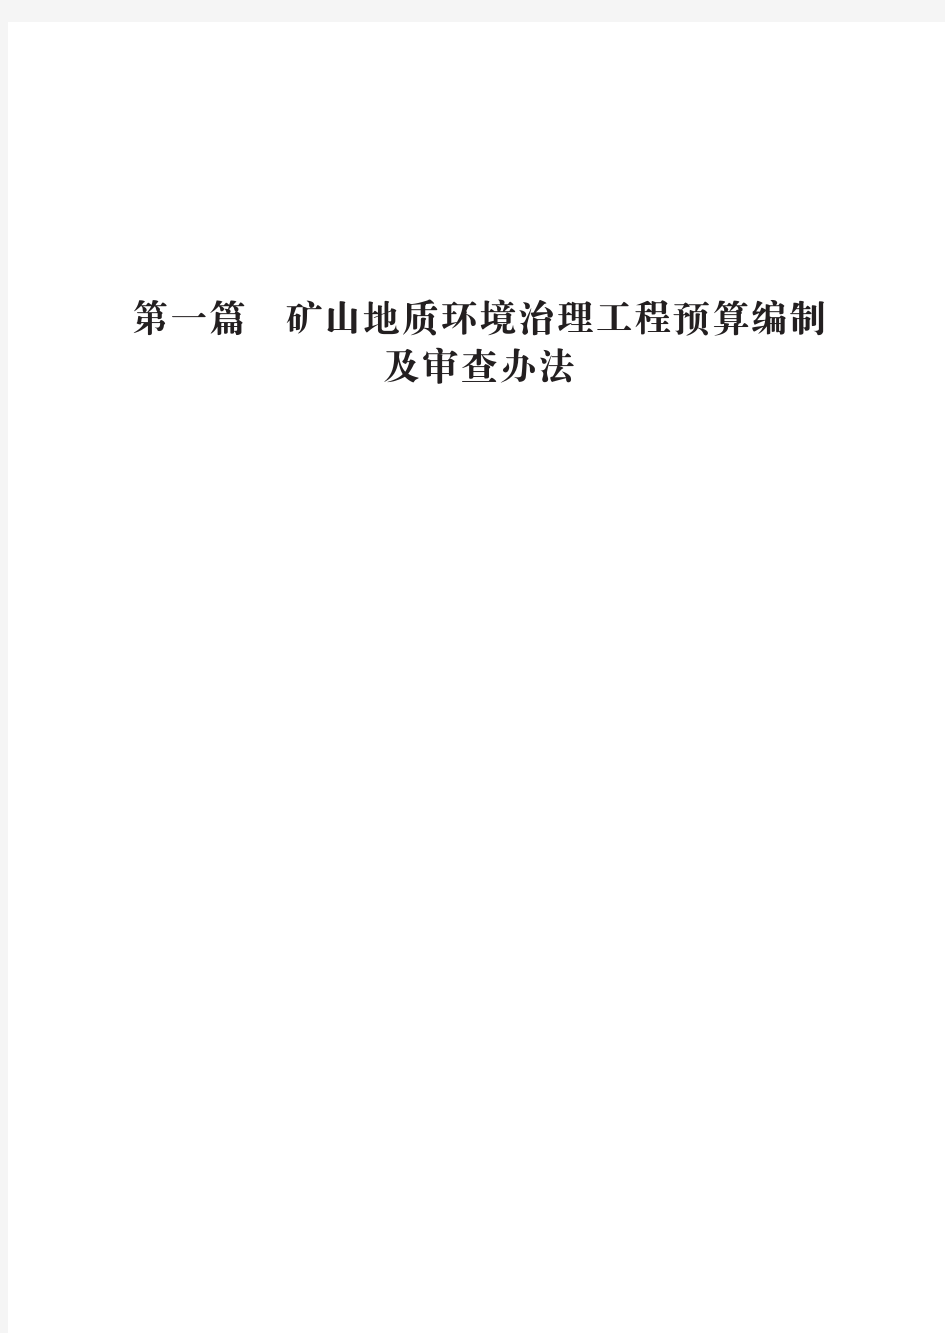 (三)安徽省矿山地质环境治理工程预算标准正文2019.04发布稿